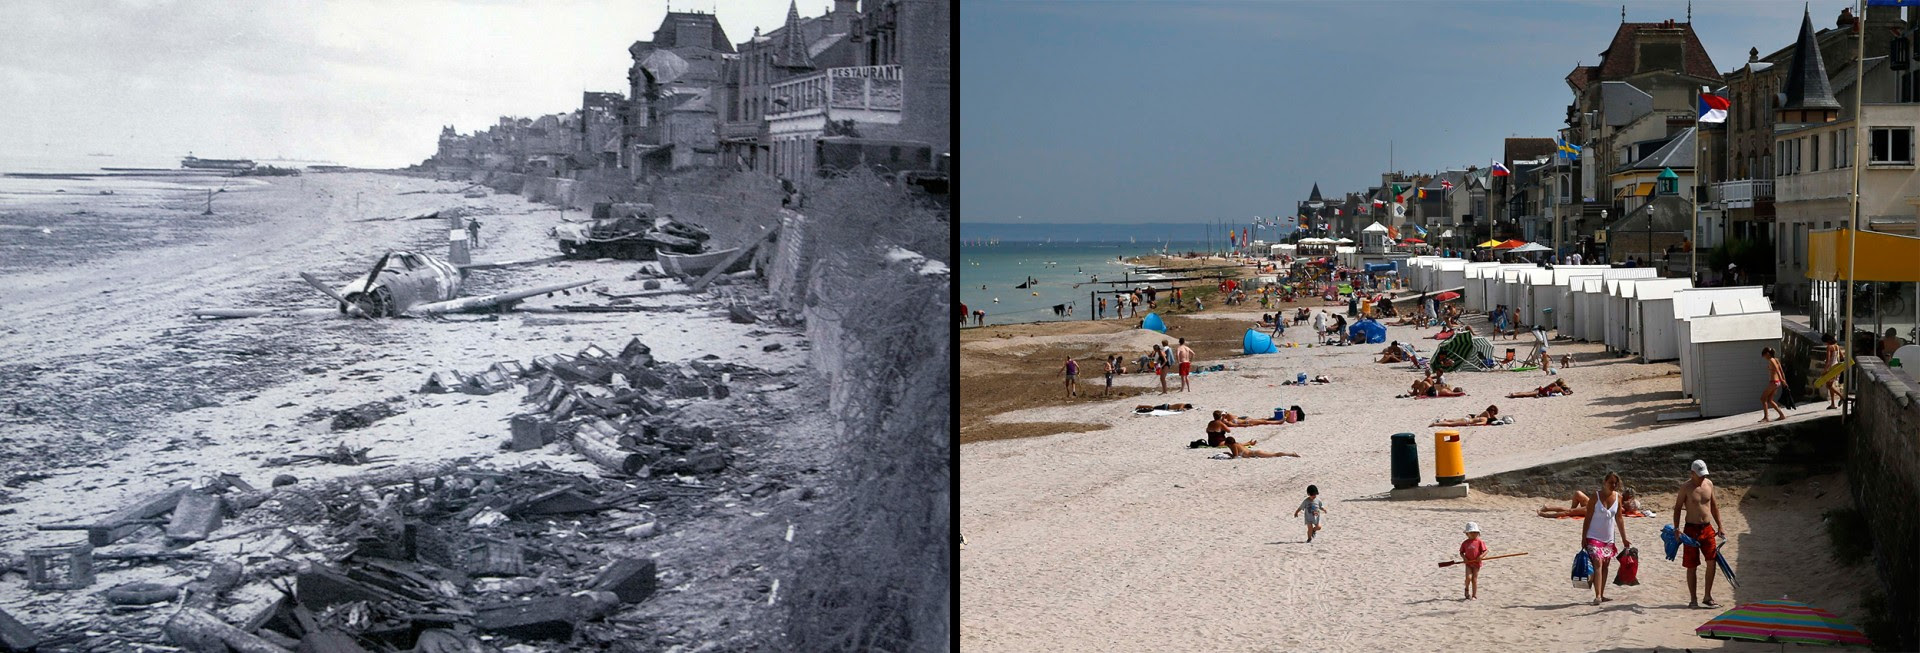 Нормандия в июне. Пляж Джуно Нормандия. Высадка в Нормандии пляж Джуно. Пляж «Джуно». Пляж Нормандии 1944.